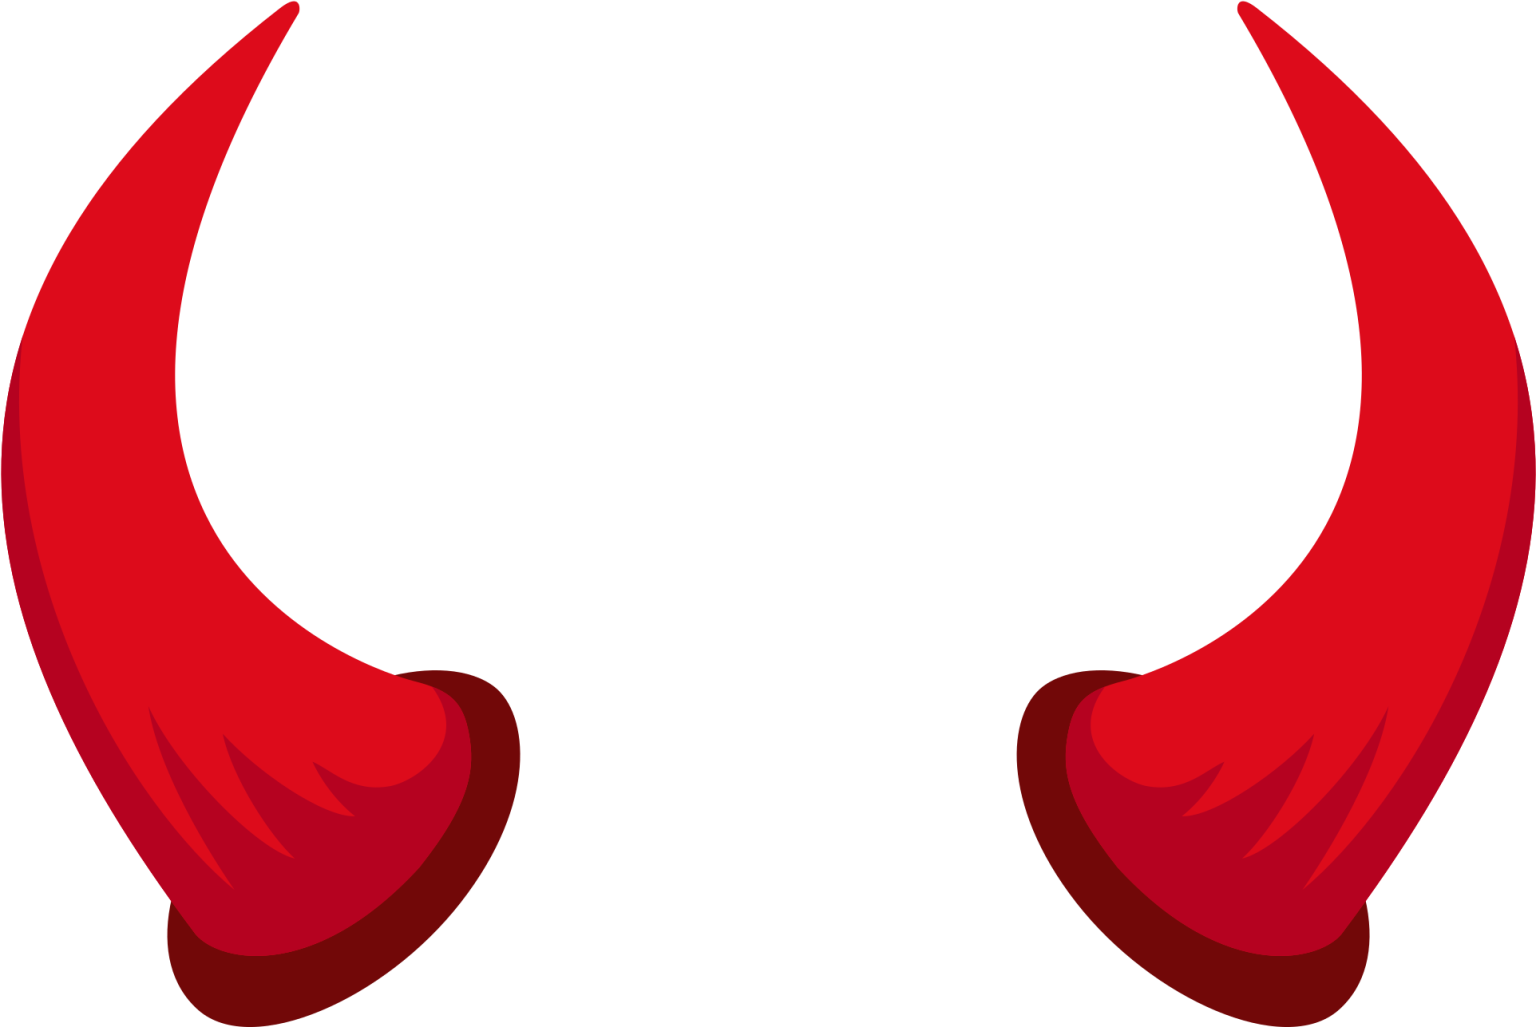 Devils Horns Png - Download Free Png Images